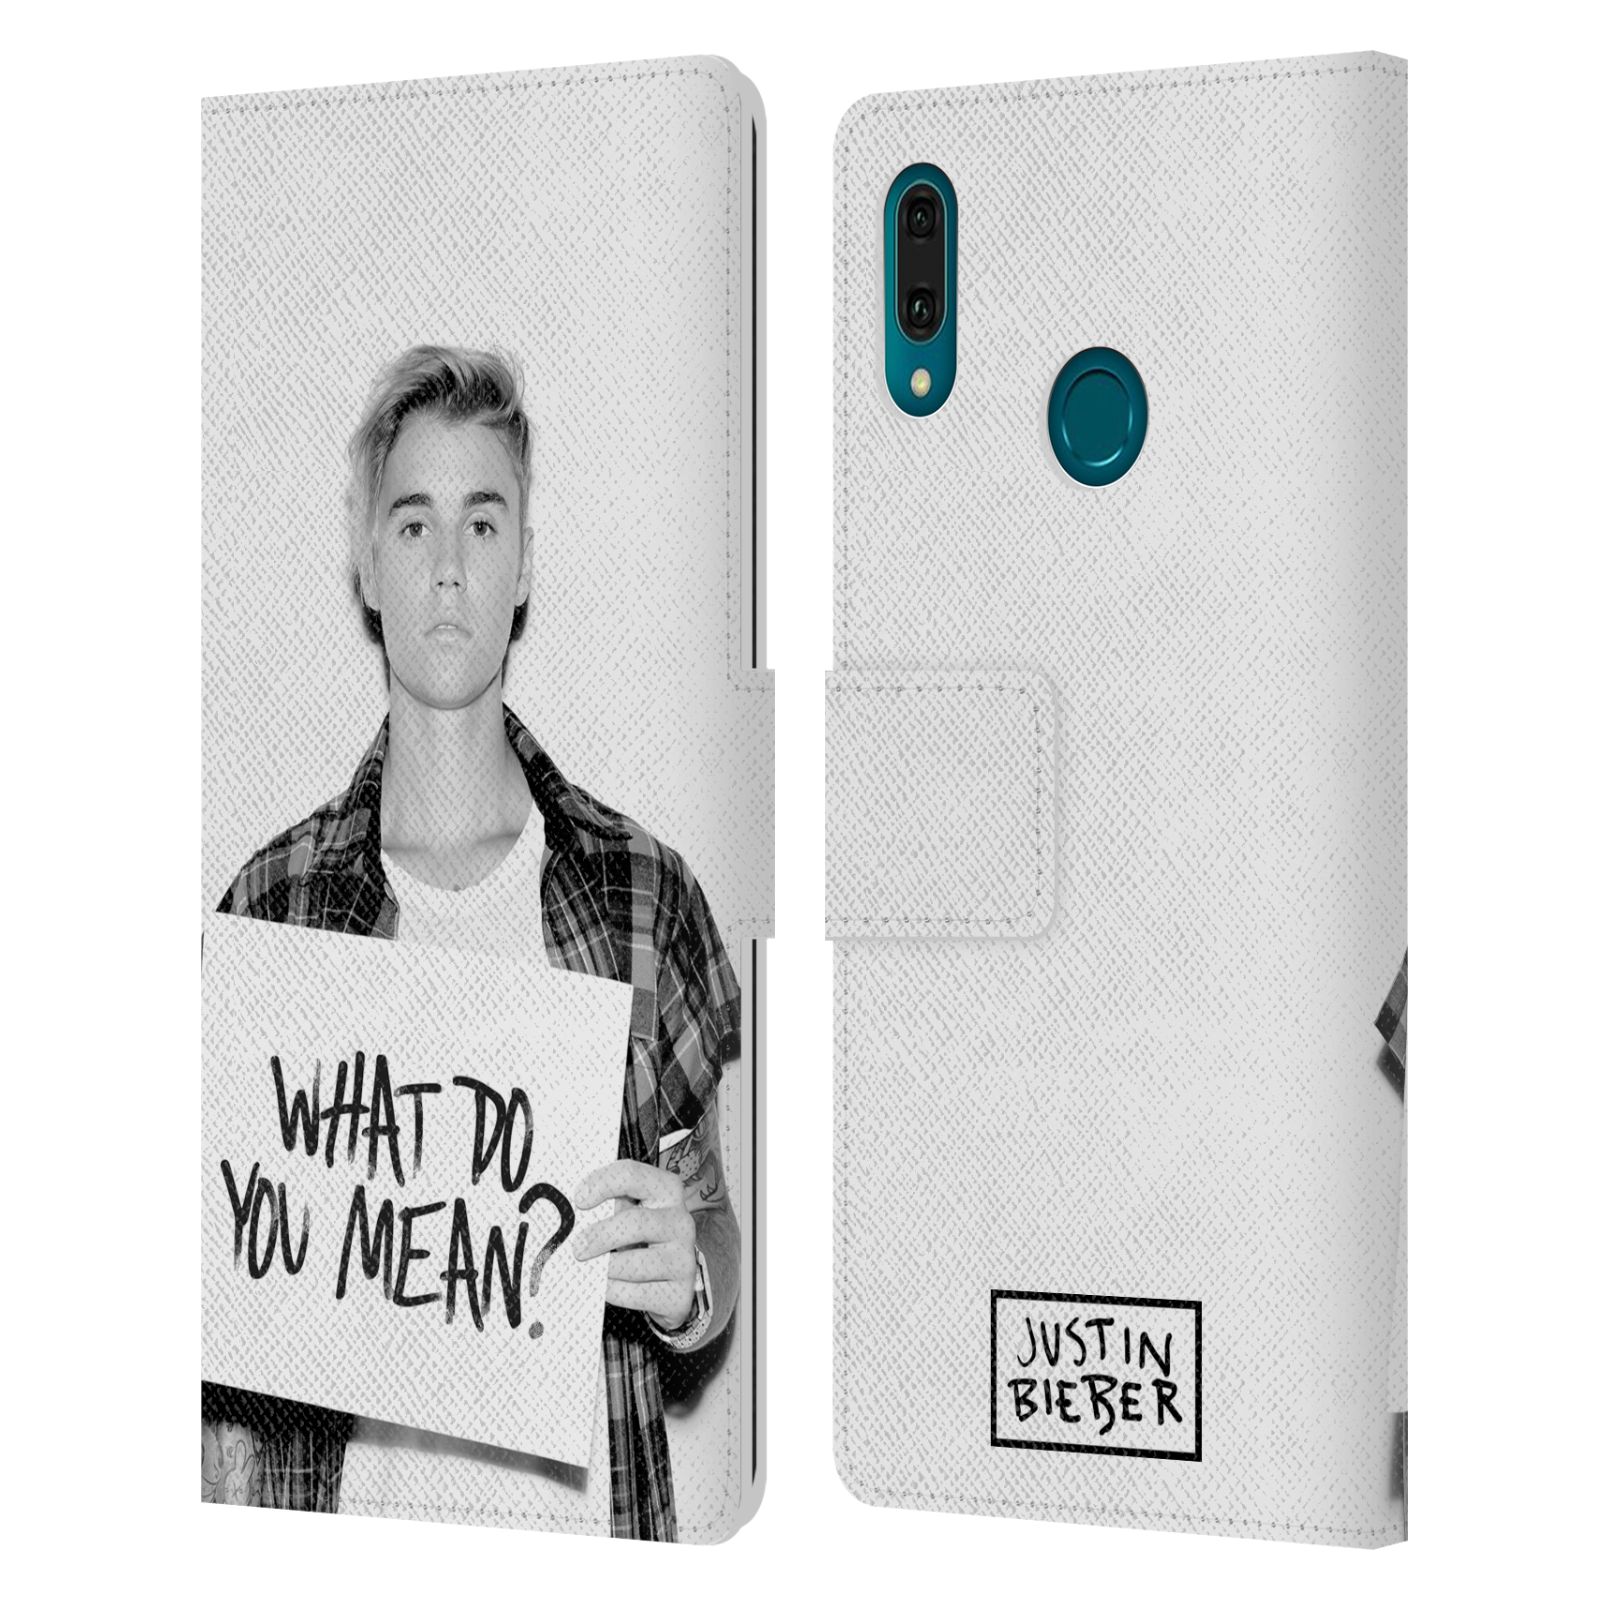 Pouzdro na mobil Huawei Y9 2019 - Head Case - Justin Bieber - Foto What Do You Mean